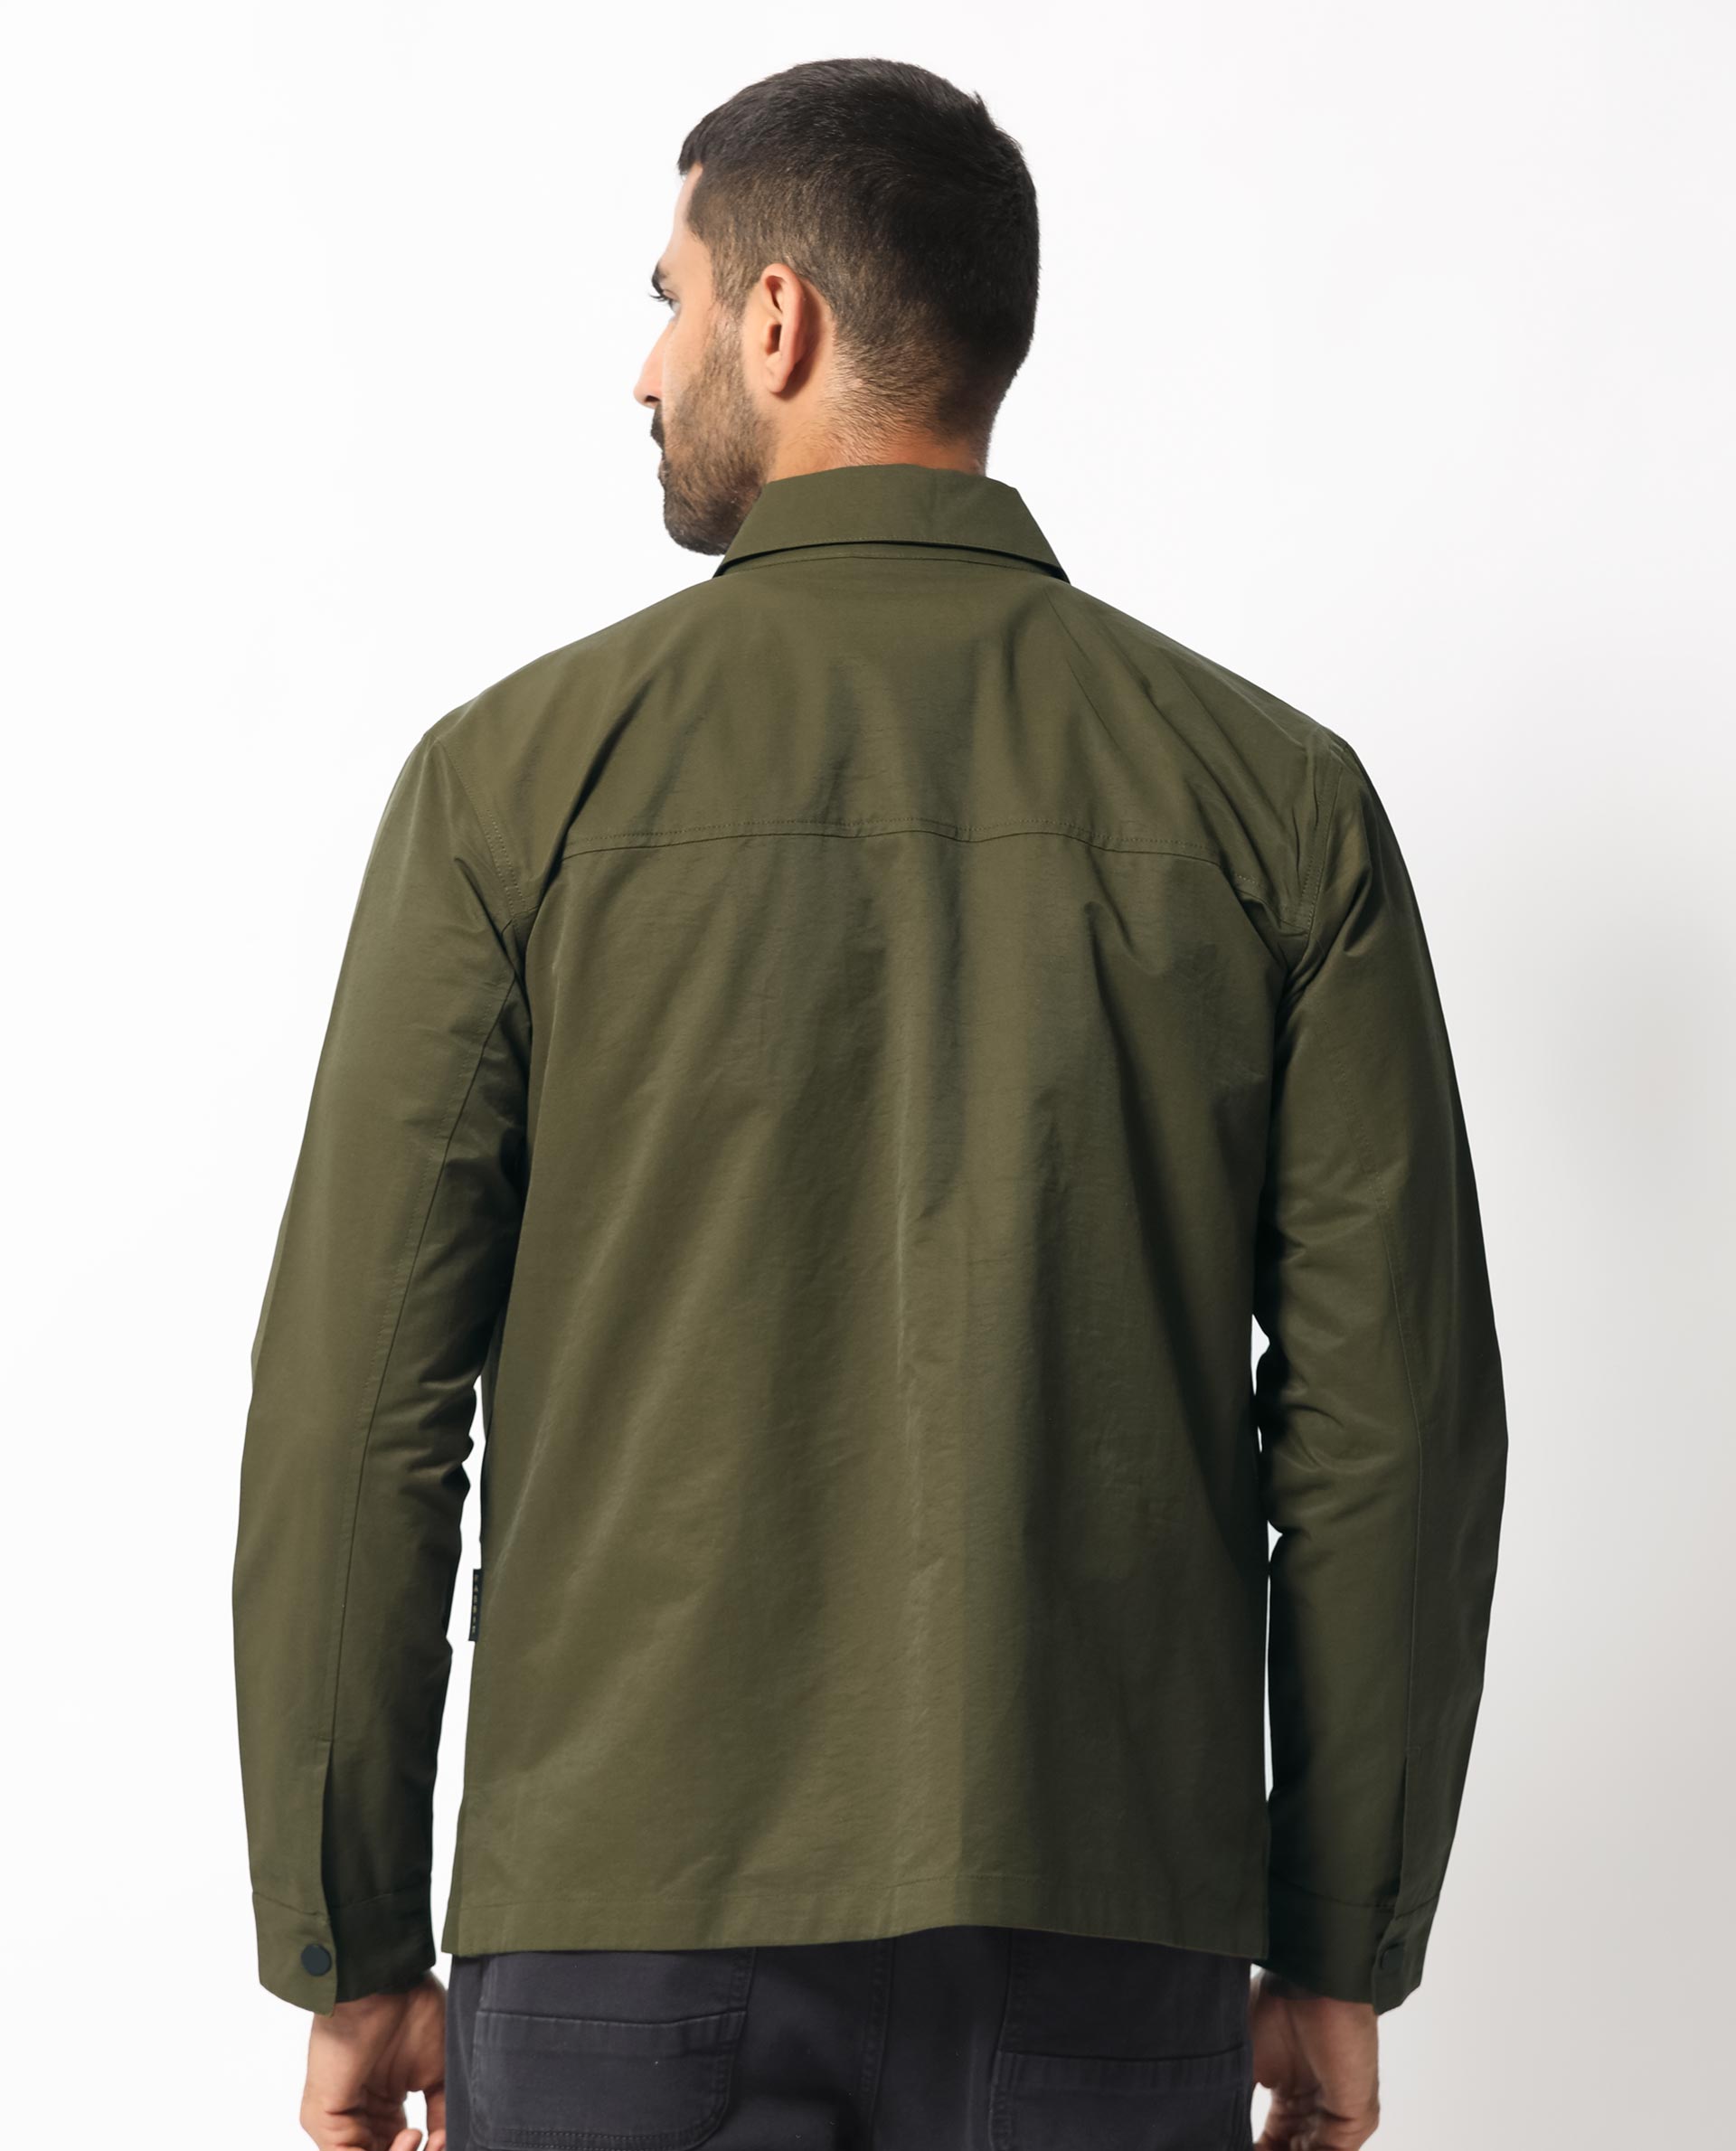 Men's Winter Cotton Jacket Warm Fleece Lined Casual Cargo Work Multi Pocket  Coat | eBay